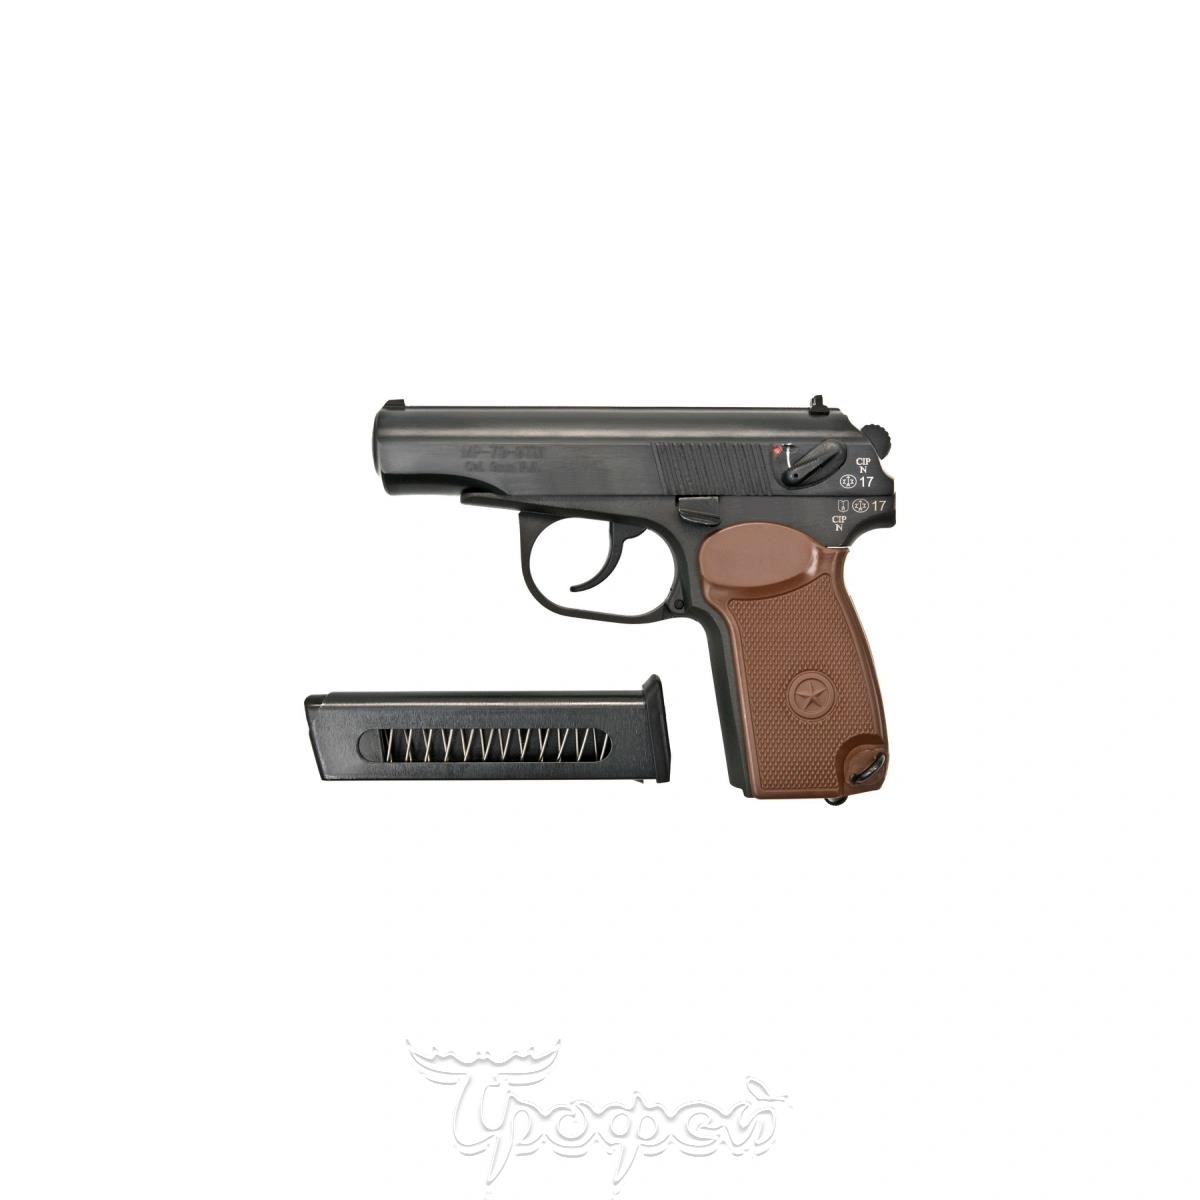 Травматический пистолет МР-79-9 ТМ (кал.9мм Р.А.) без доп. магазина (84345)Baikal купить: цена, фото